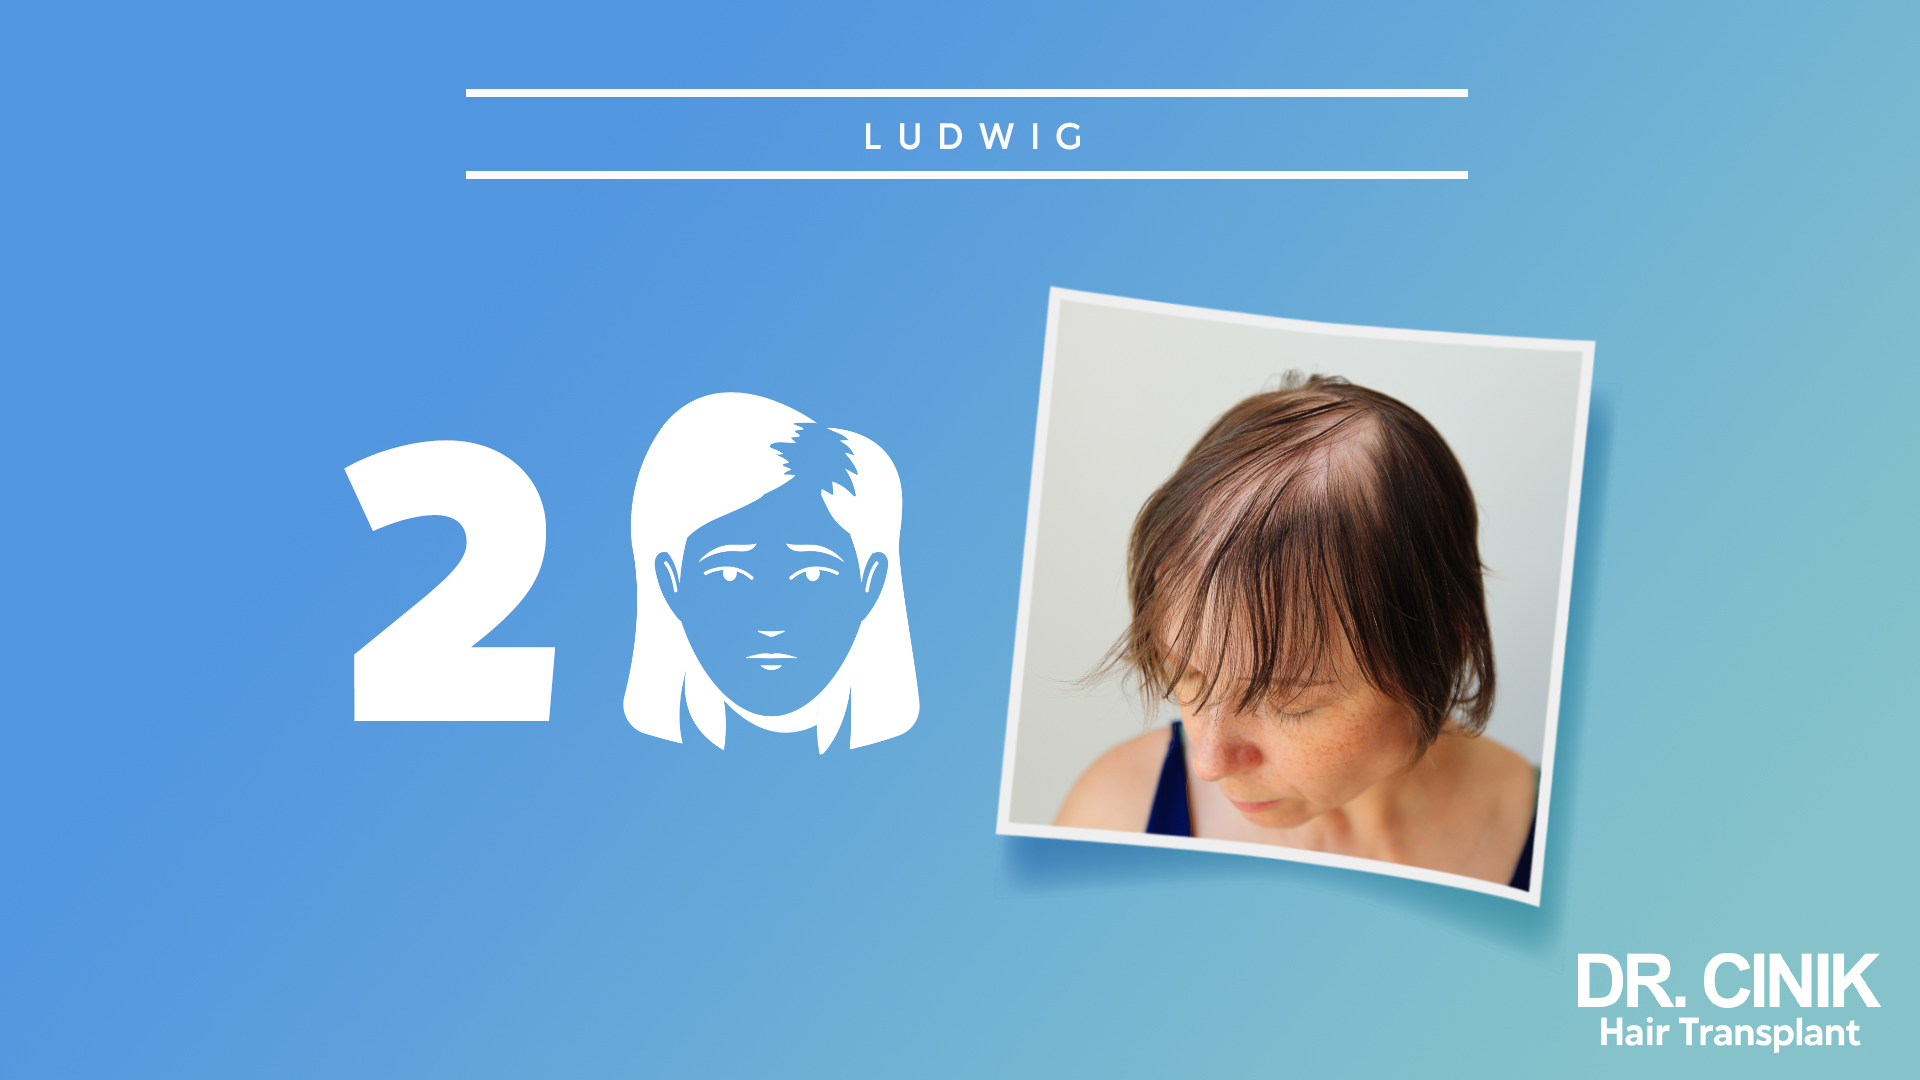 Imagen que muestra el segundo paso de la escala Ludwig. A la izquierda, hay un gráfico con el número 2 y una ilustración de una mujer con mayor adelgazamiento del cabello. A la derecha, una foto de una mujer mostrando pérdida significativa de cabello en la parte superior de la cabeza. Fondo azul con texto que dice 'DR. CINIK Hair Transplant'.